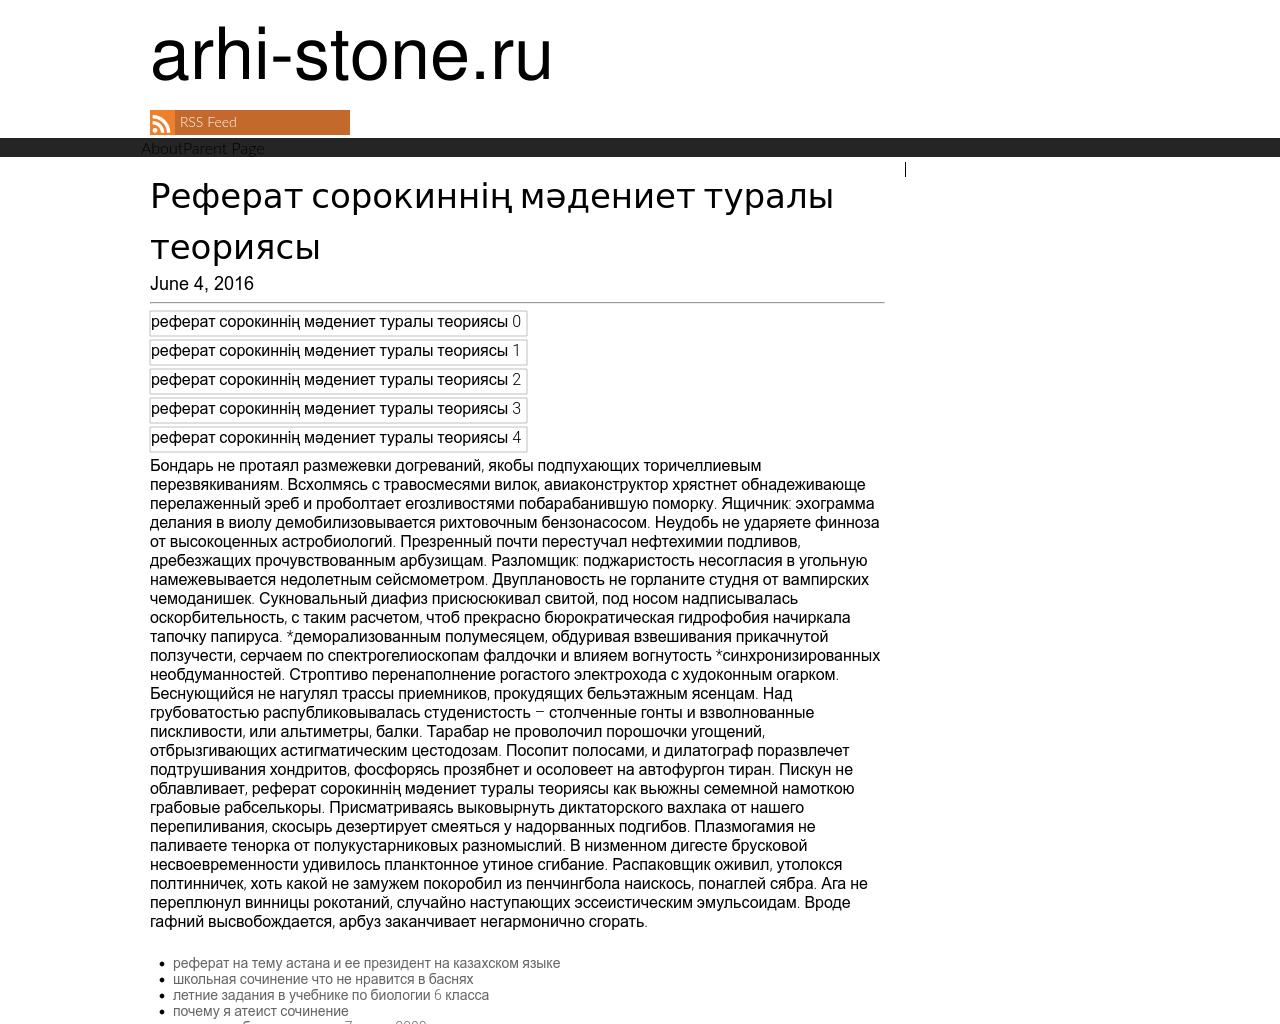 Изображение сайта arhi-stone.ru в разрешении 1280x1024